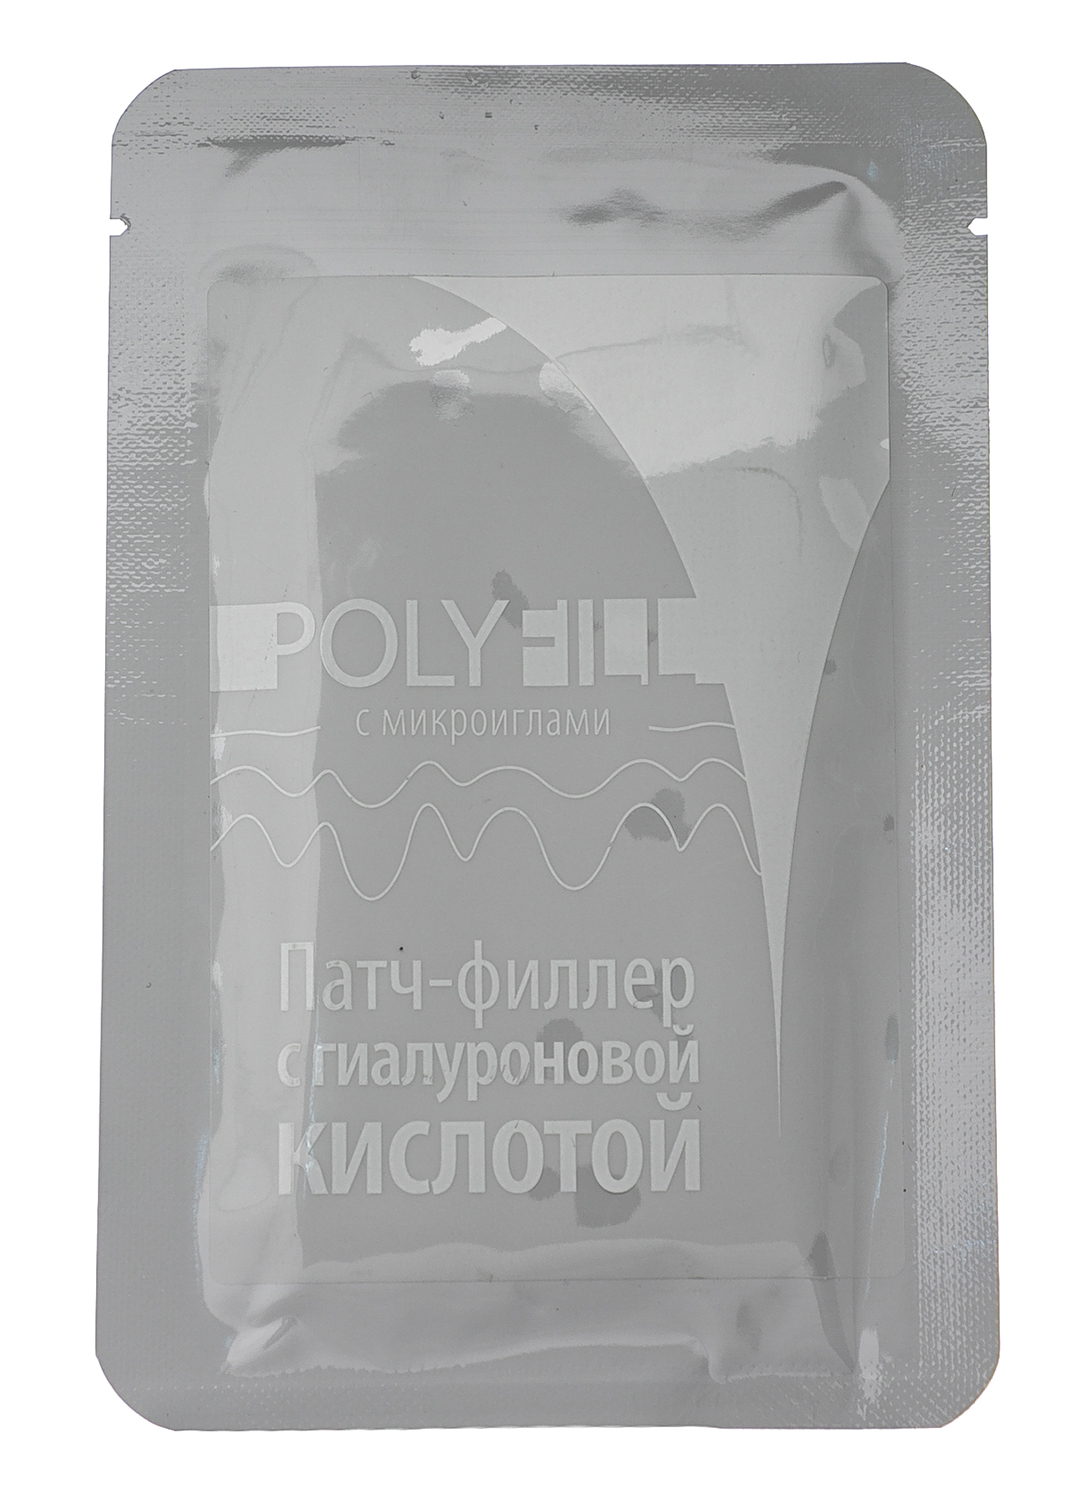 Патч-филлер с гиалуроновой кислотой Premium PolyFill, 1шт